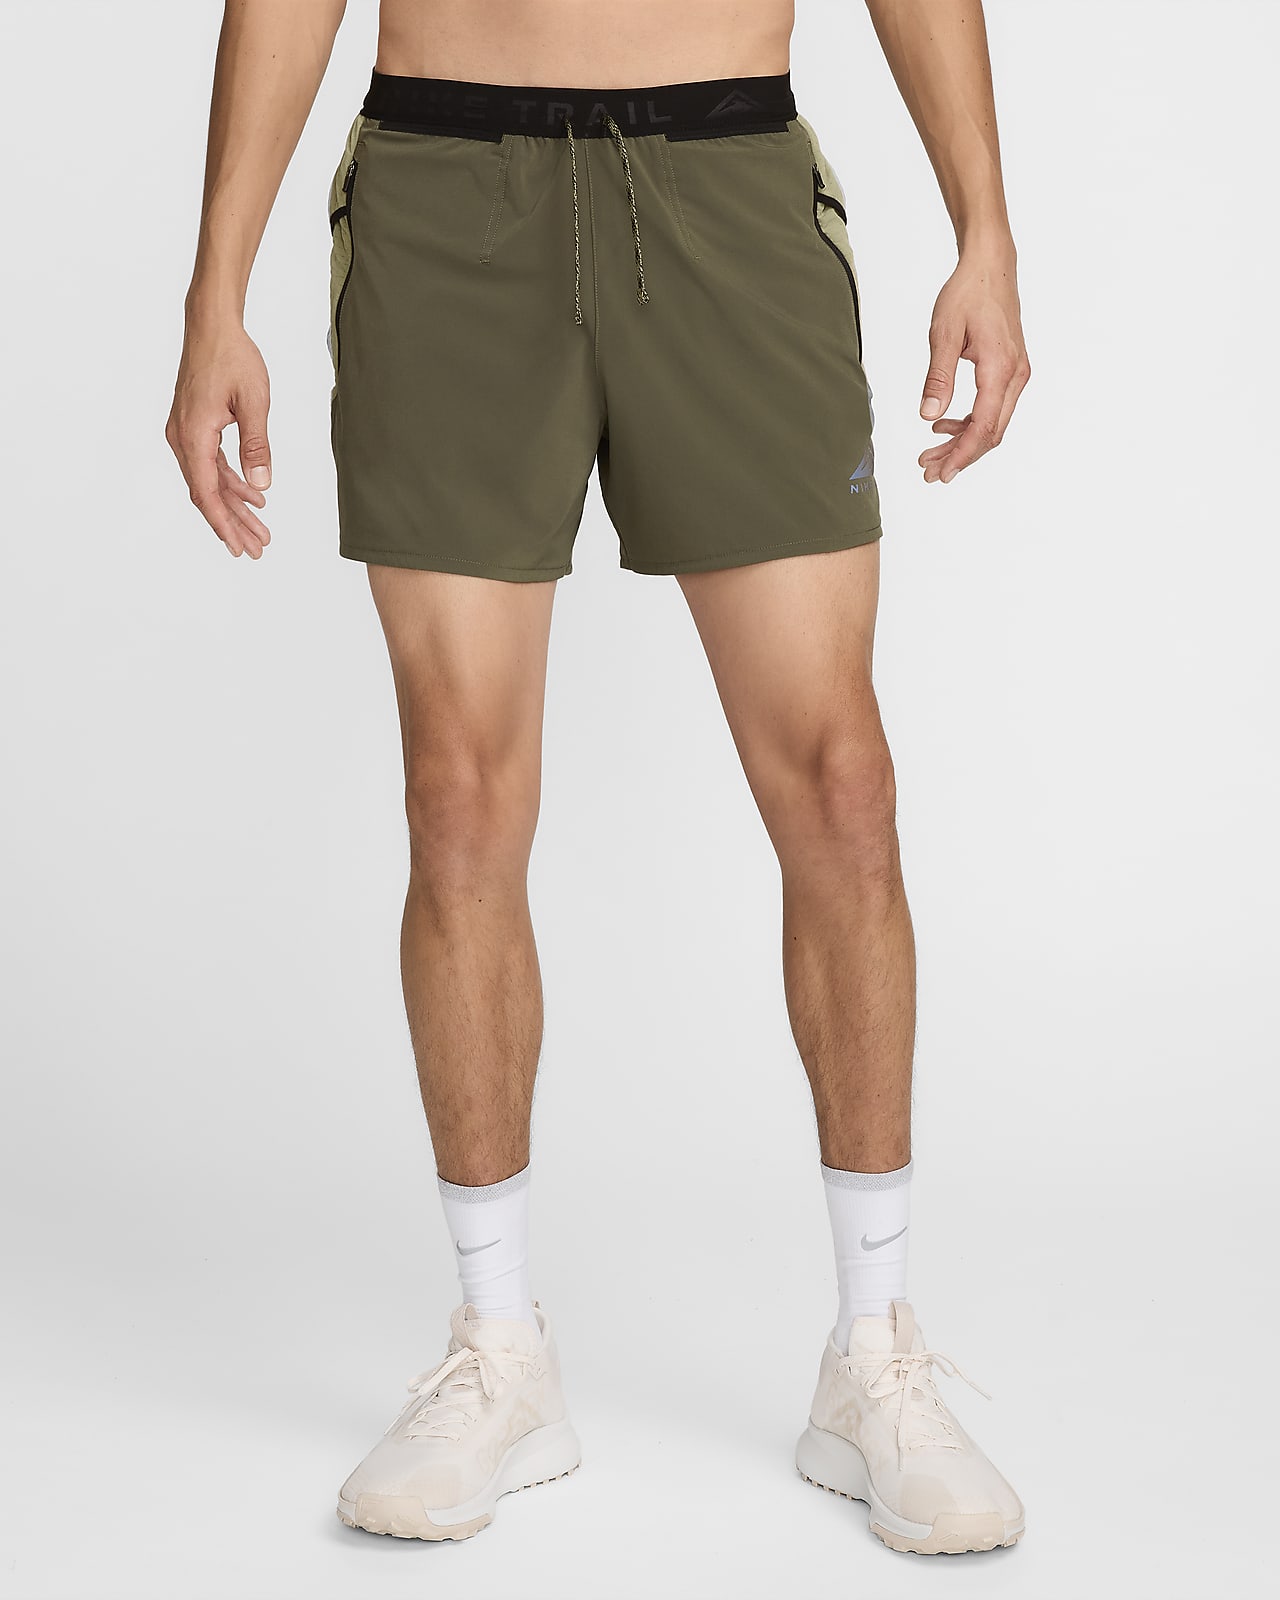 Shorts de running con forro de ropa interior Dri-FIT de 12.5 cm para hombre Nike Trail Second Sunrise